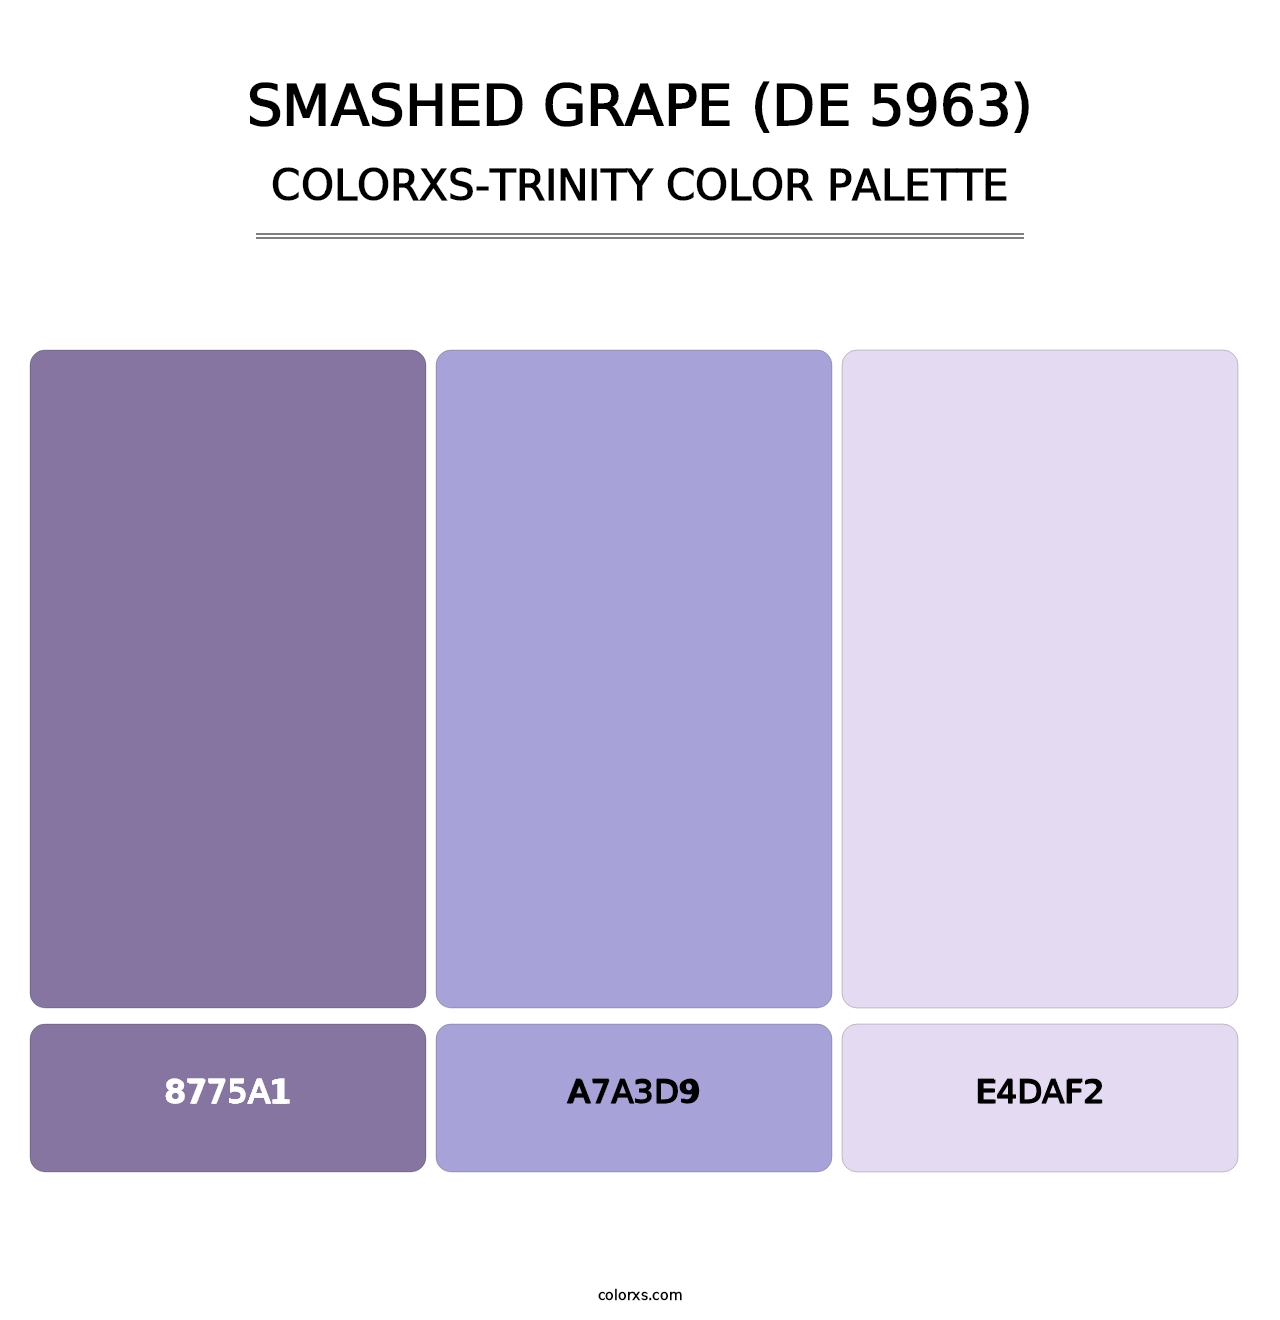 Smashed Grape (DE 5963) - Colorxs Trinity Palette